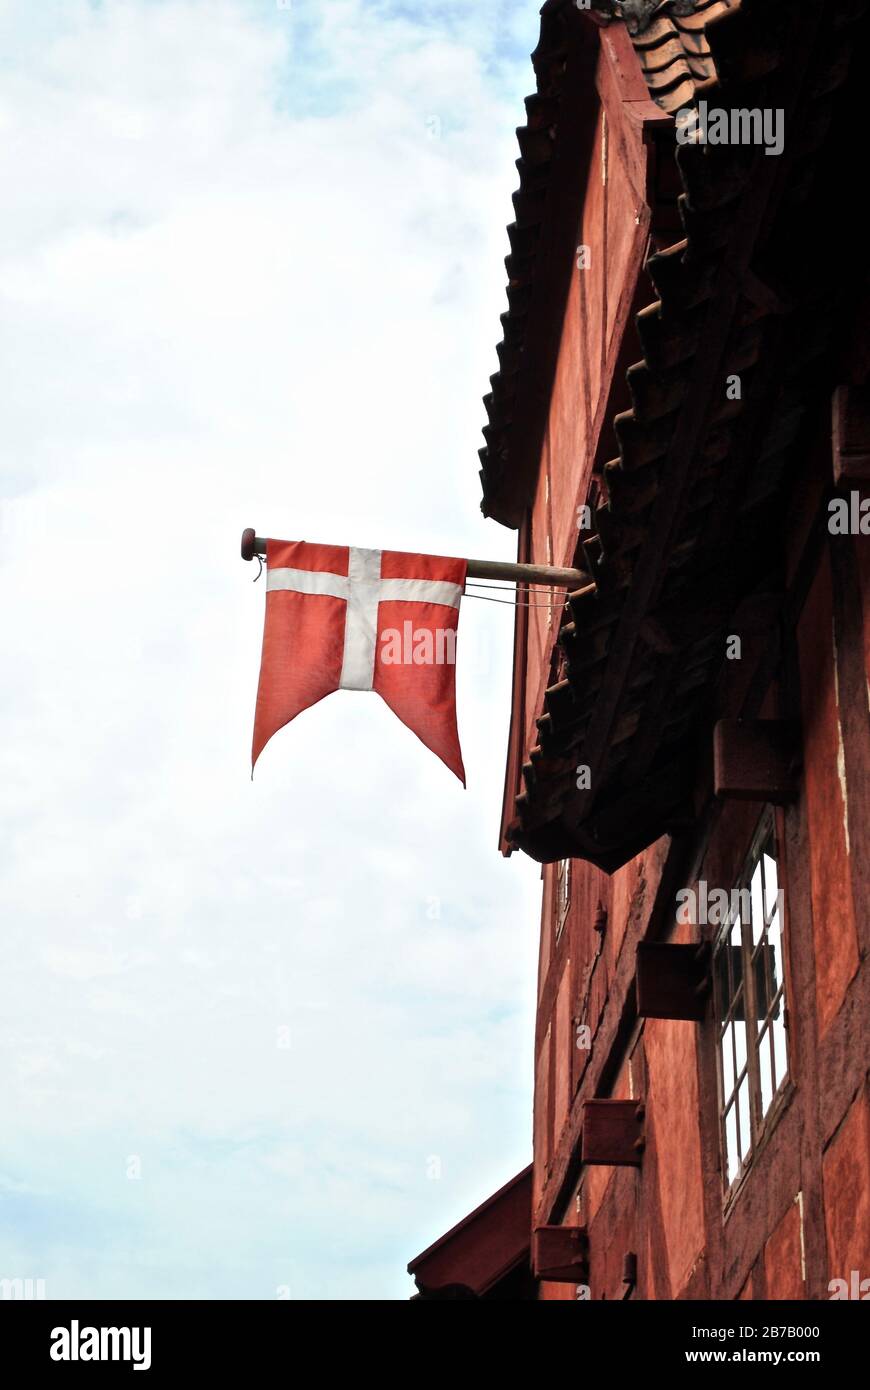 Dänische Flagge hängt von einem roten Haus in den Gamle By (die Altstadt), einem Freilichtmuseum im Botanischen Garten Aarhus, Aarhus, Dänemark. Stockfoto